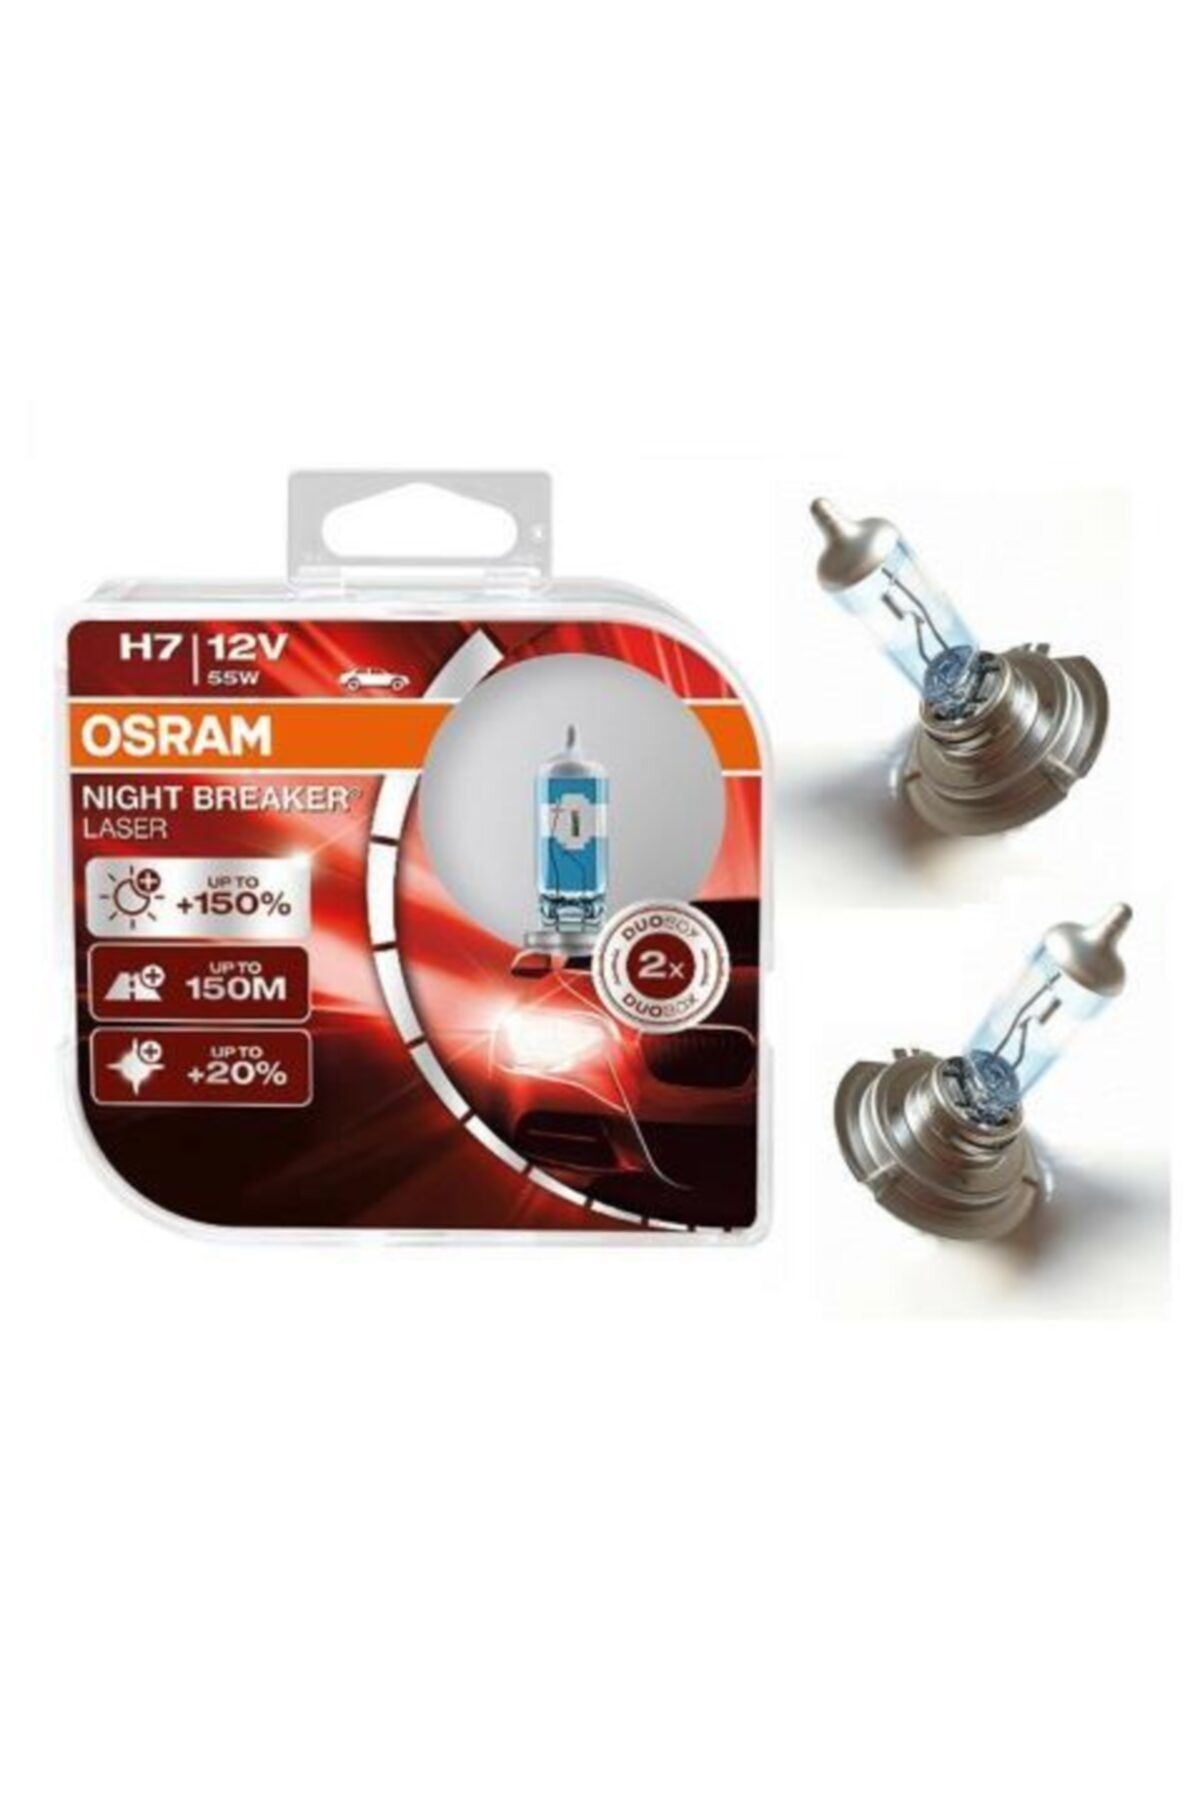 Osram Audi Night Breaker Laser H7 Ampul %150 Fazla Işık